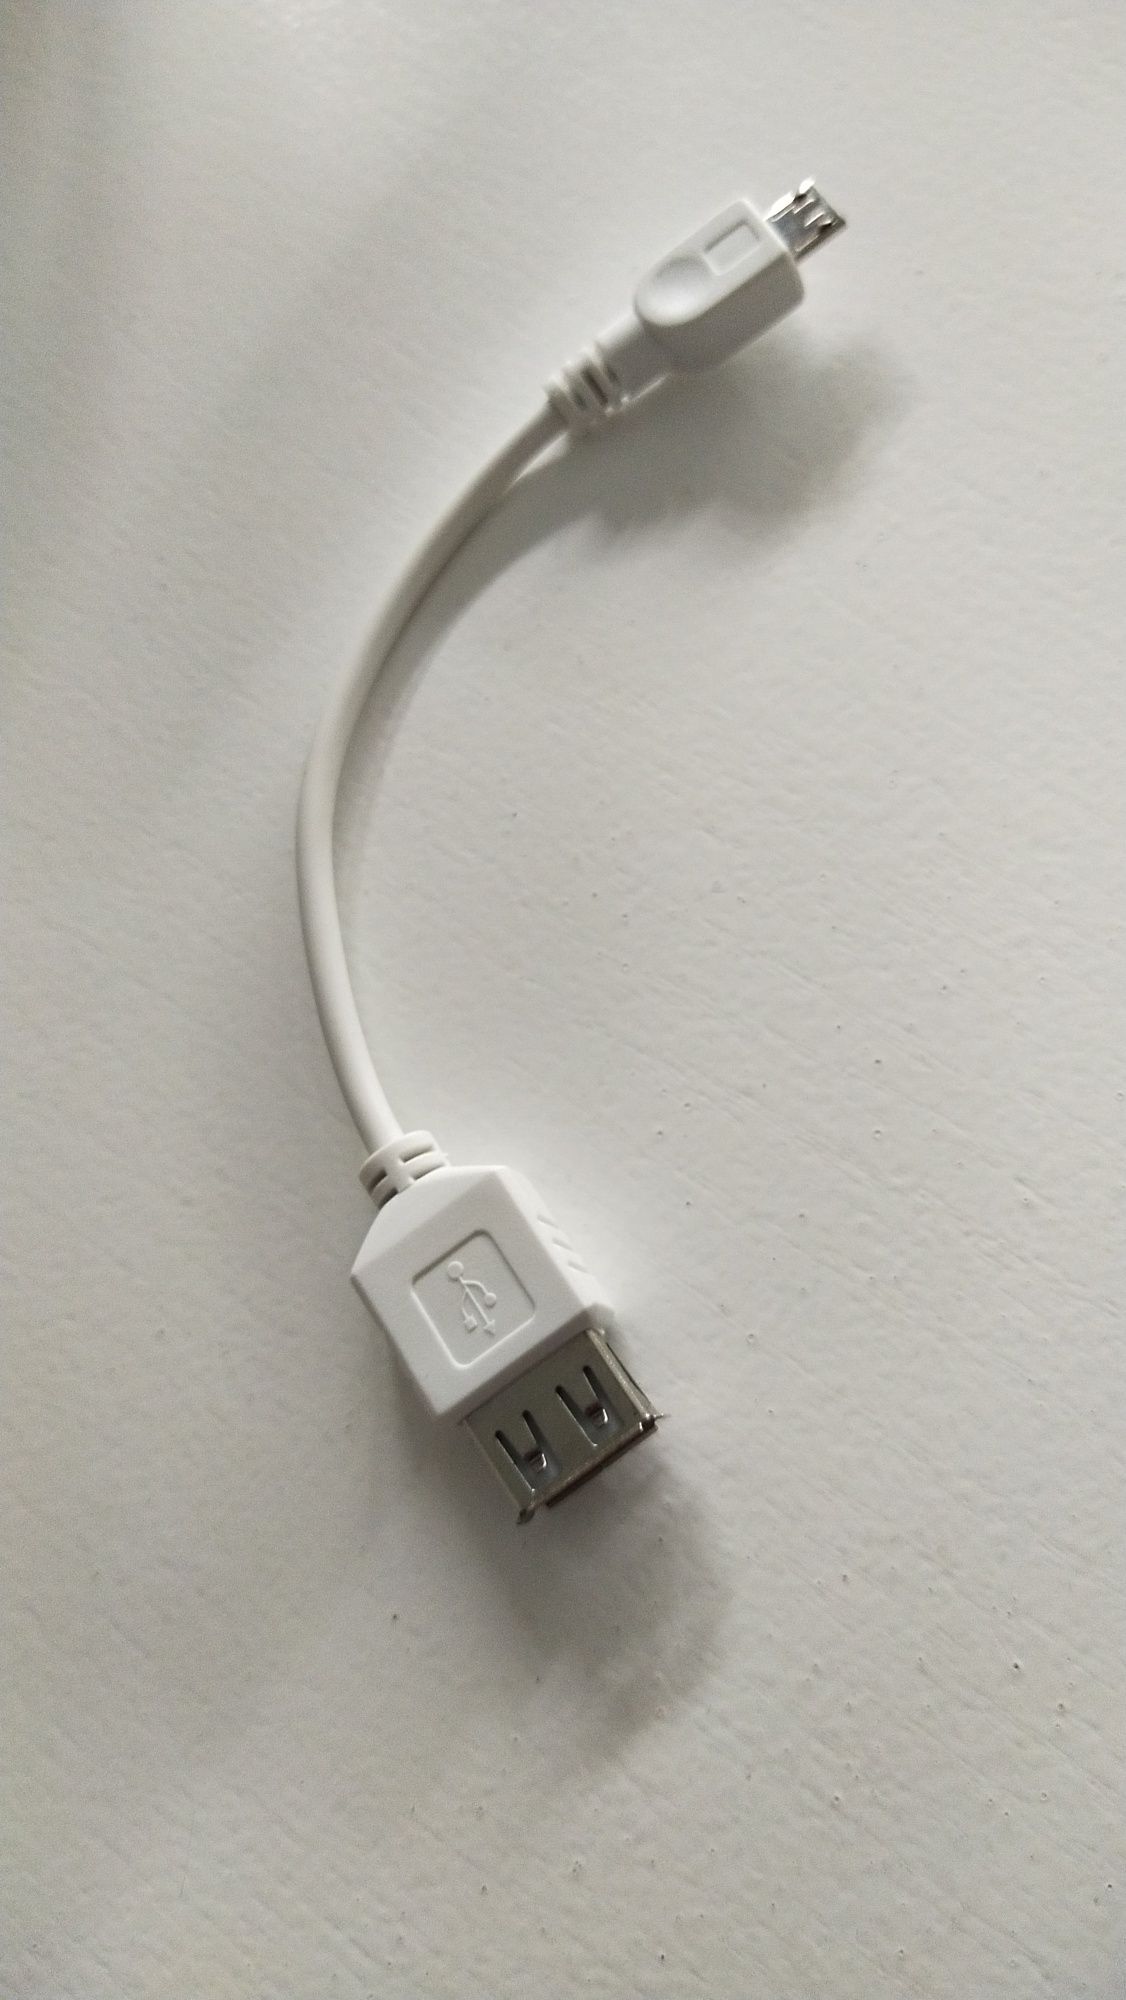 Переходники для USB